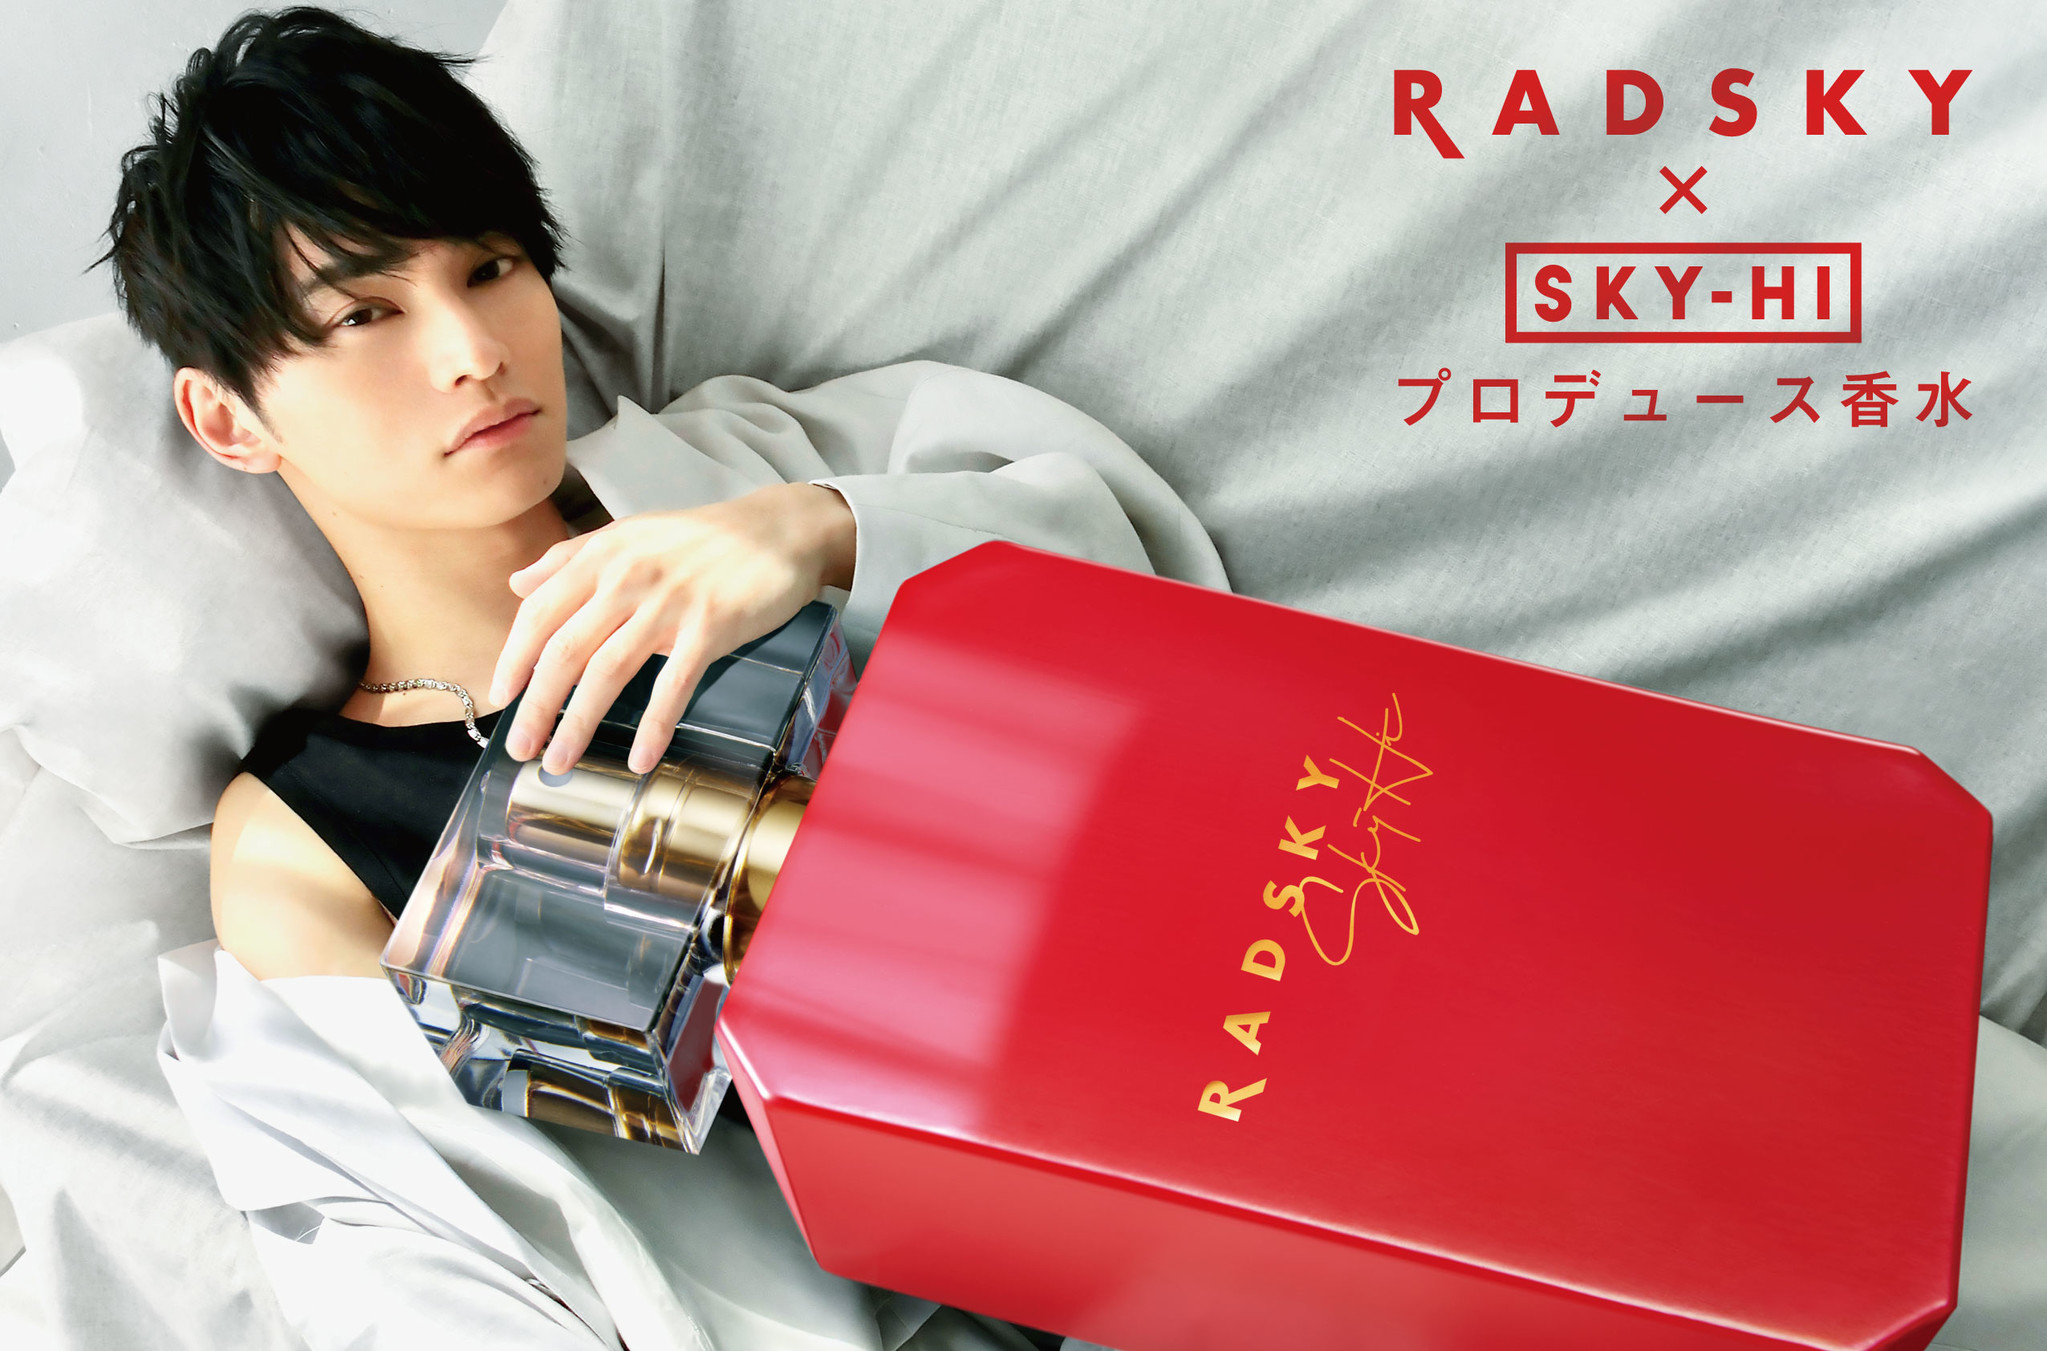 楽曲の世界観を商品化したSKY-HIプロデュース香水『ラッドスカイ